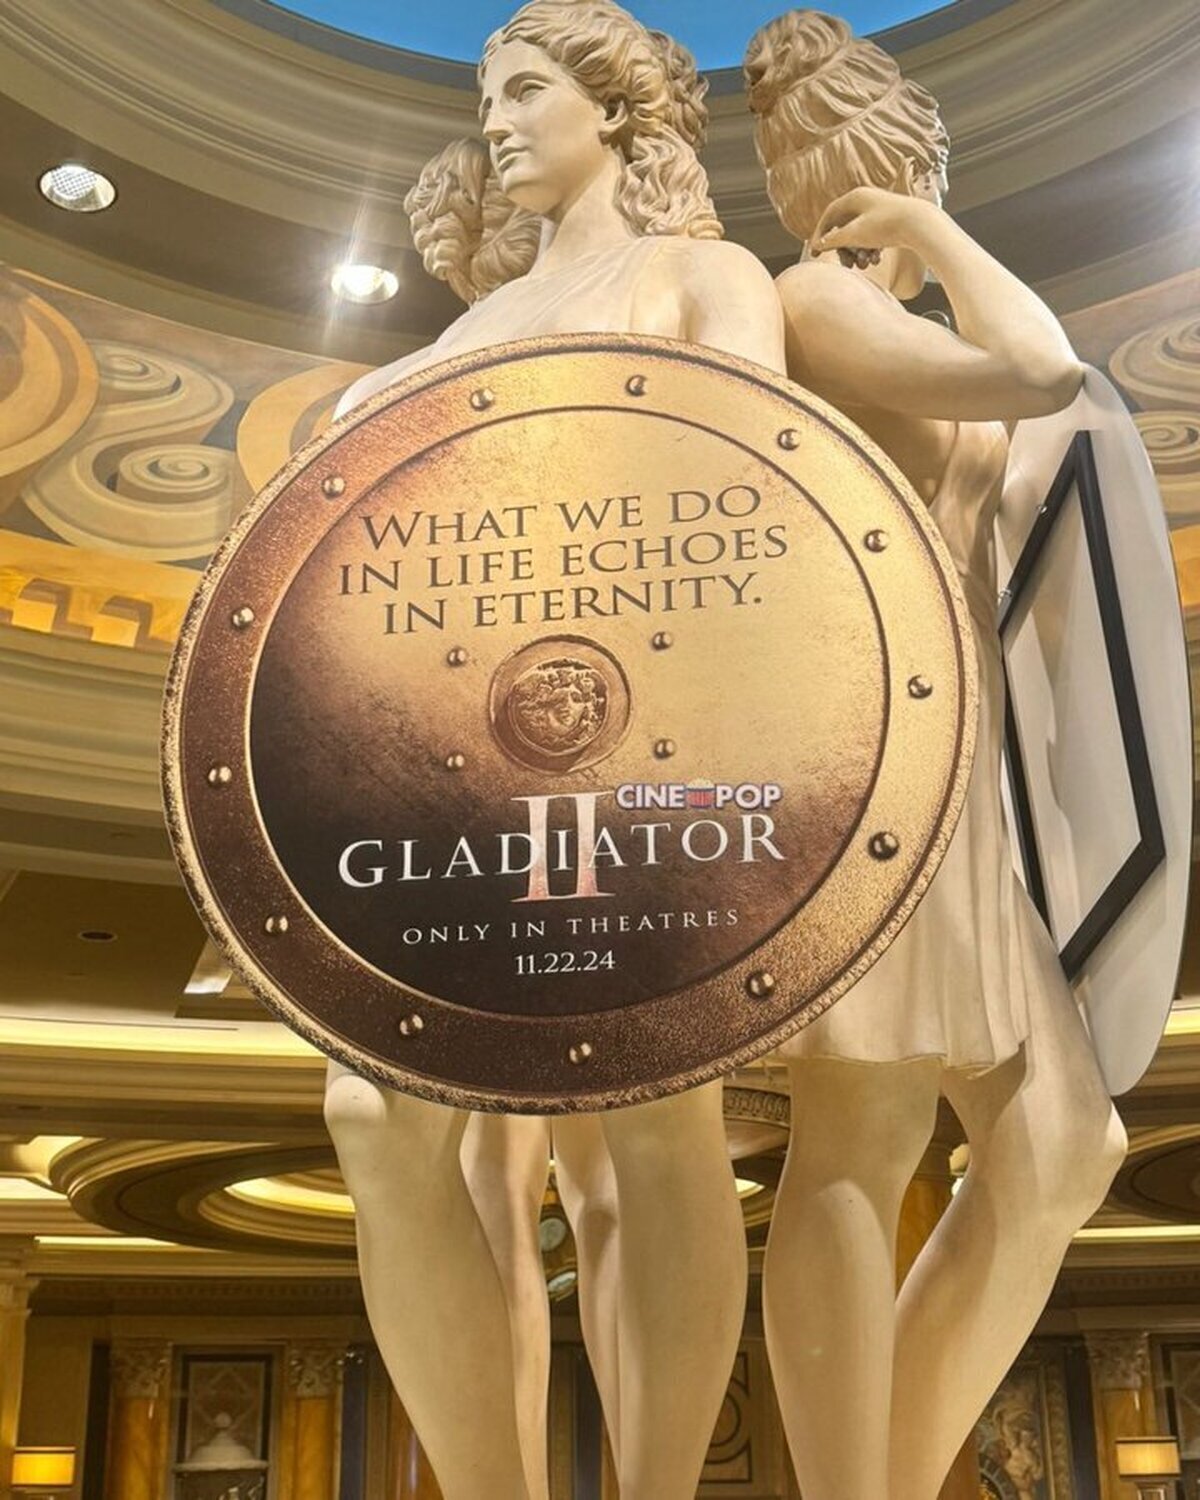 Ayer se reveló el primer logo oficial de Gladiator 2, la próxima película de #RidleyScott que llegará a cines el próximo 22 de noviembre